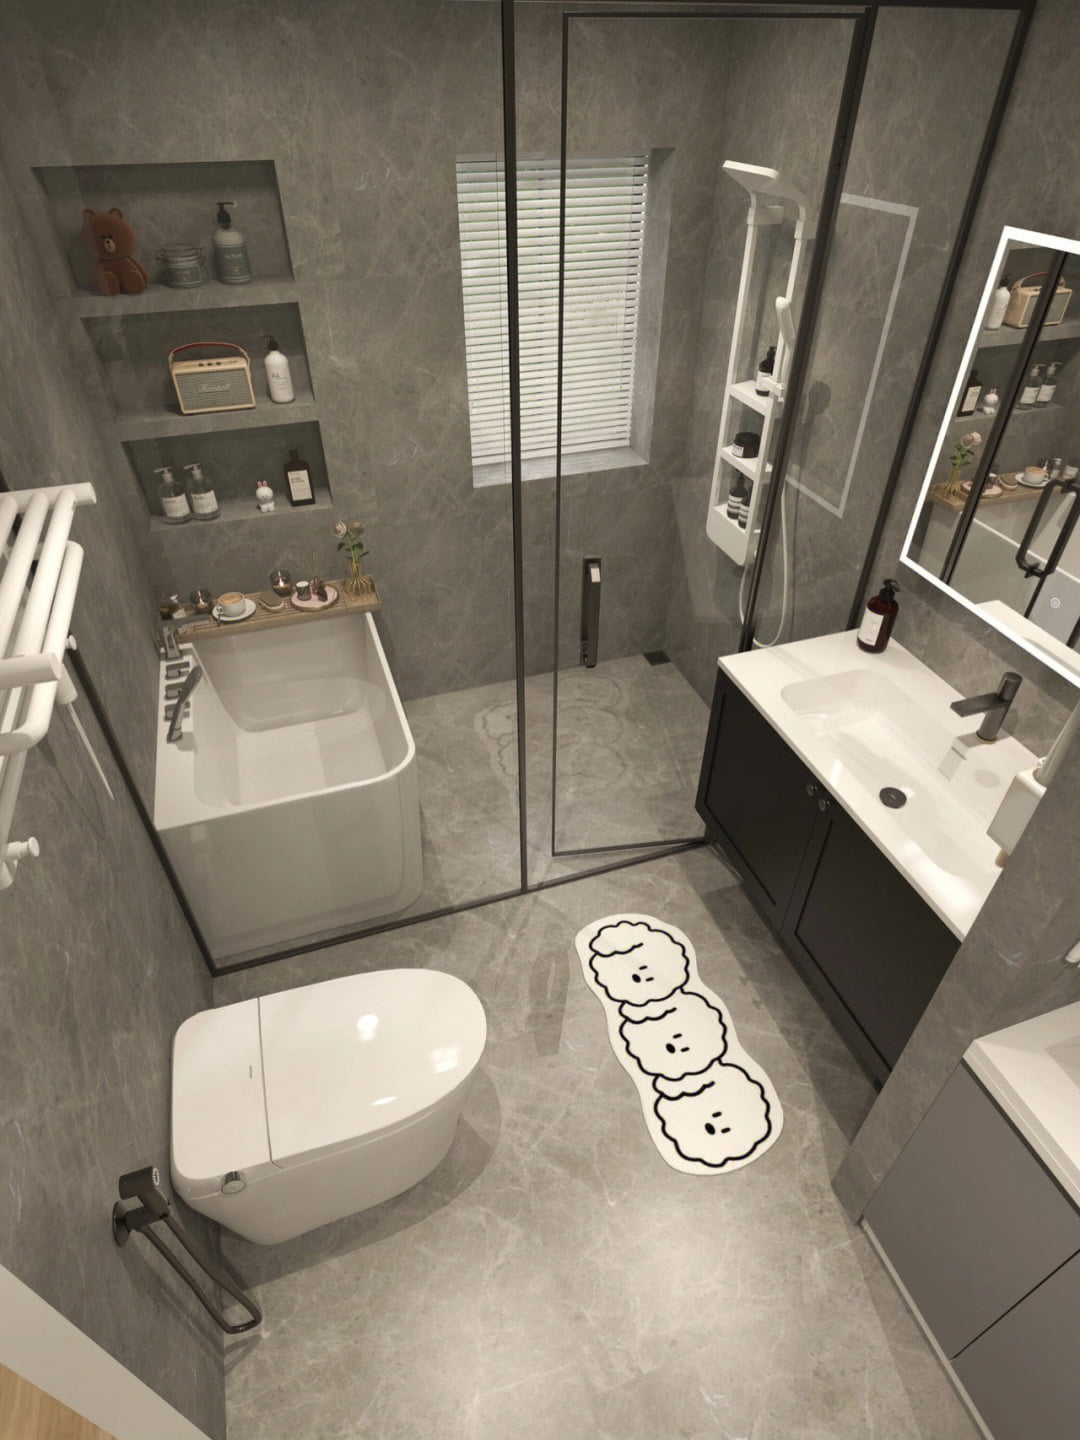 5 Idee per il bagno in marmo grigio Storie dei clienti